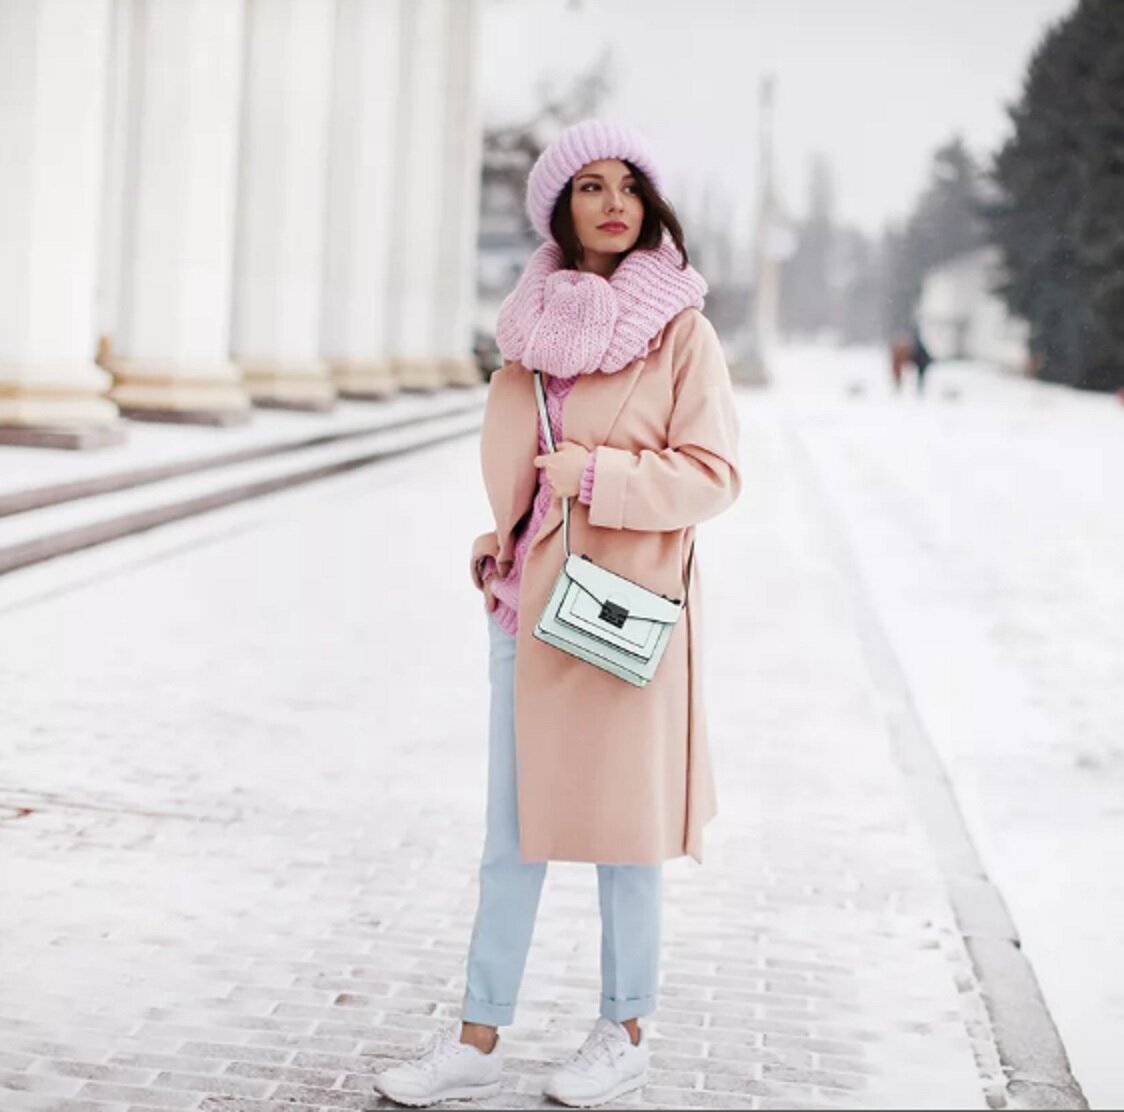 Розовое пальто шапка. Зимние образы. Обоазс с розовым пальто. Шарф к розовому пальто. Стильные зимние образы для девушек.